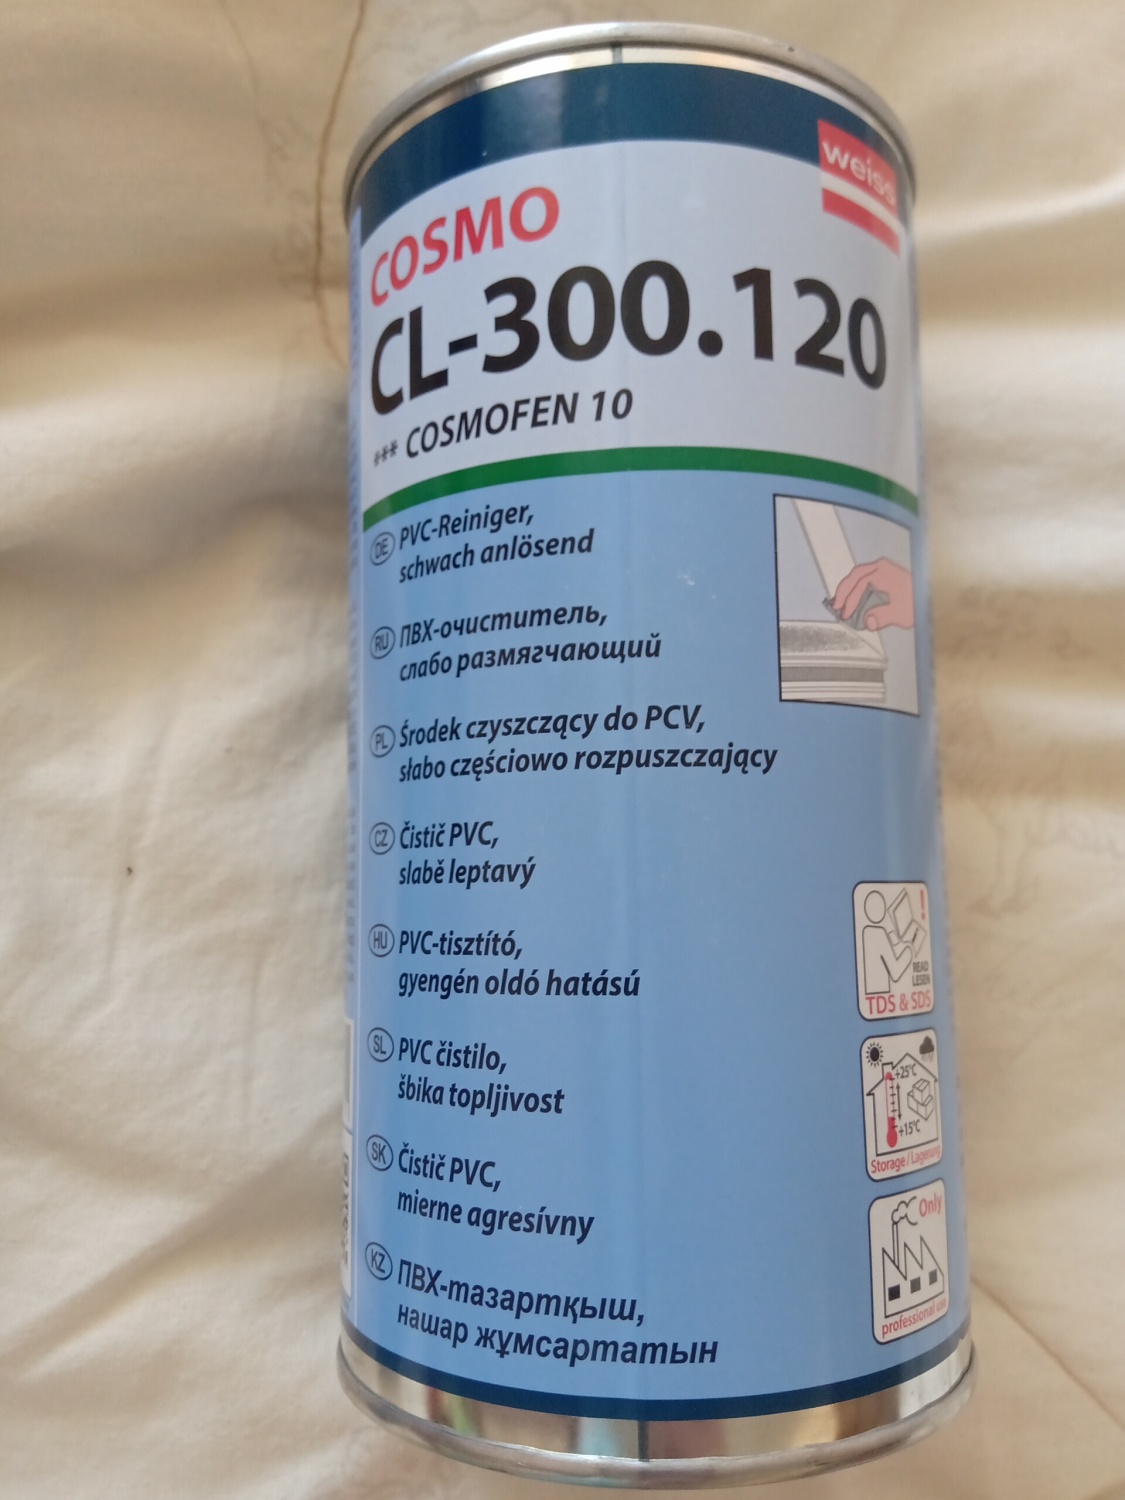 Reiniger anlösend Cosmofen 10 CL-300.120 Cosmo PVC 